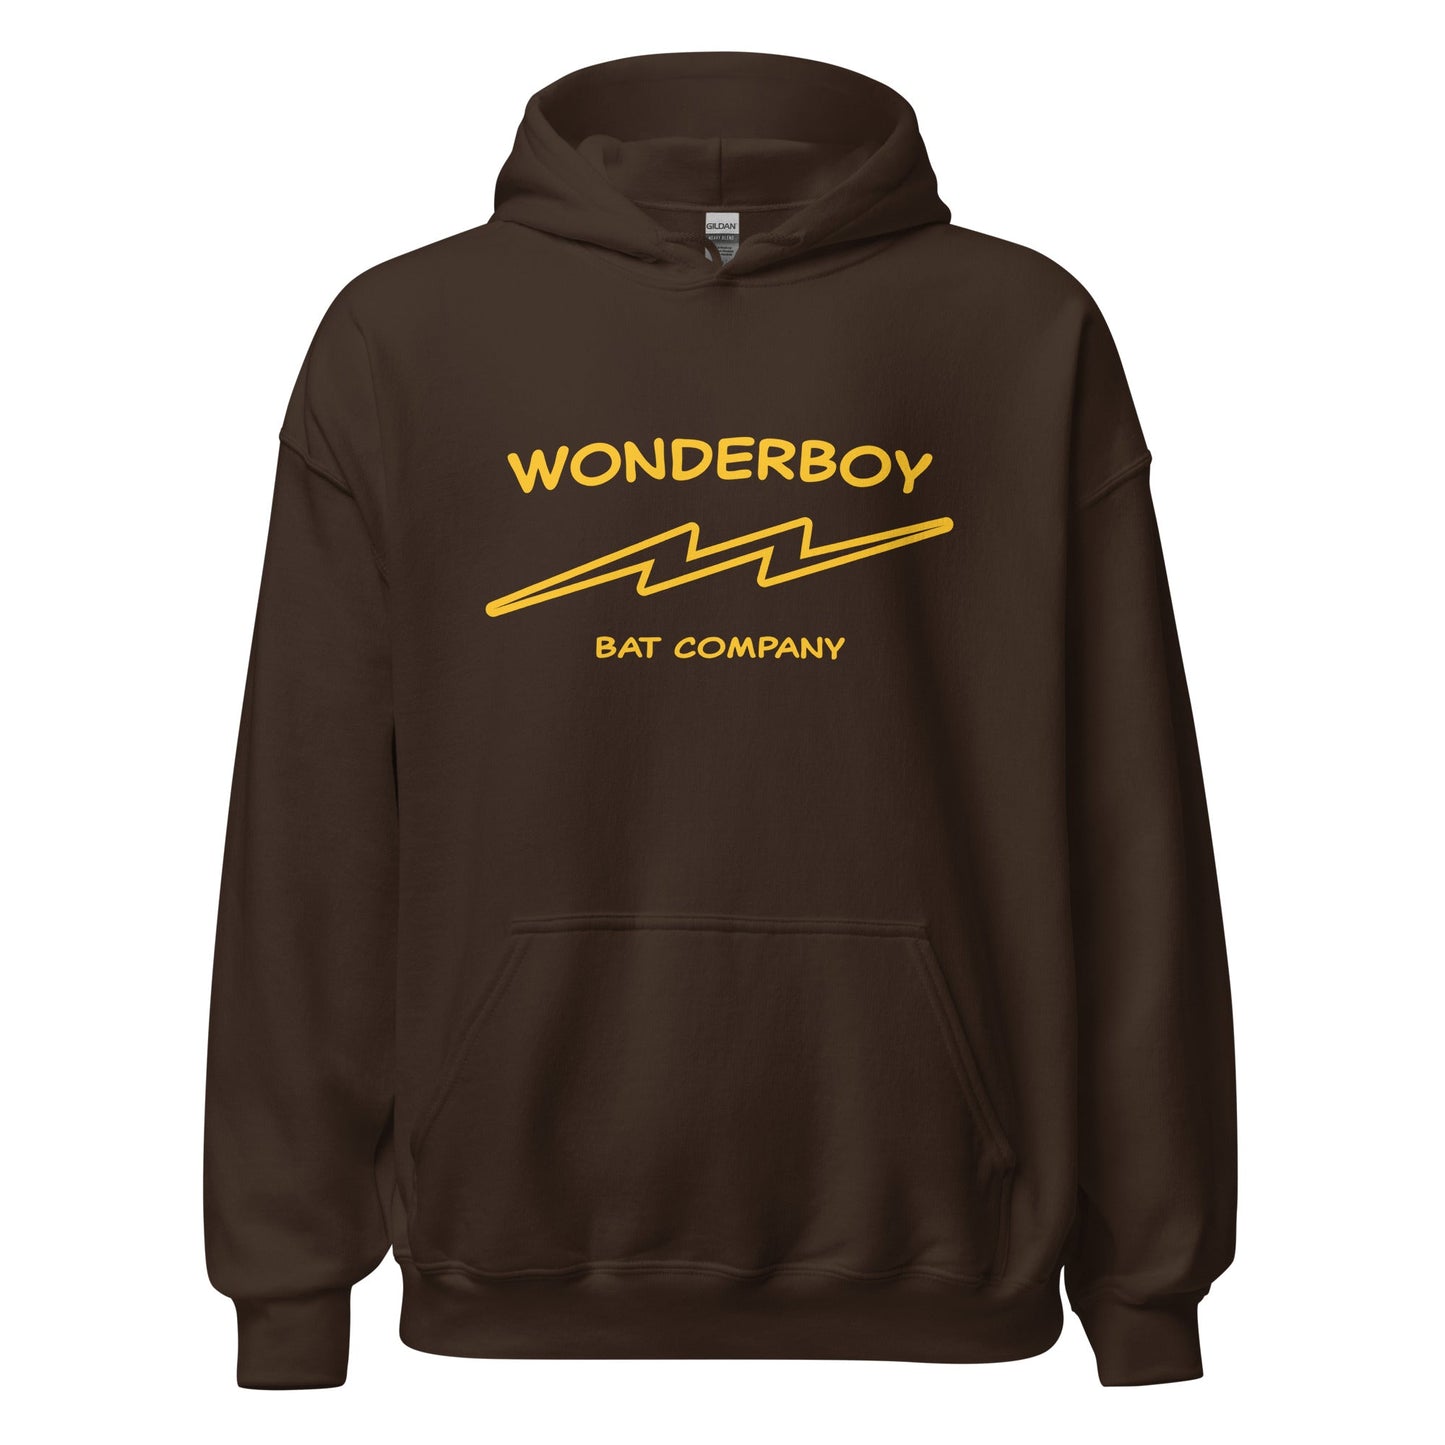 Wonderboy Bat Co Hoodie - Classic 80s Movie Natural Sweatshirt